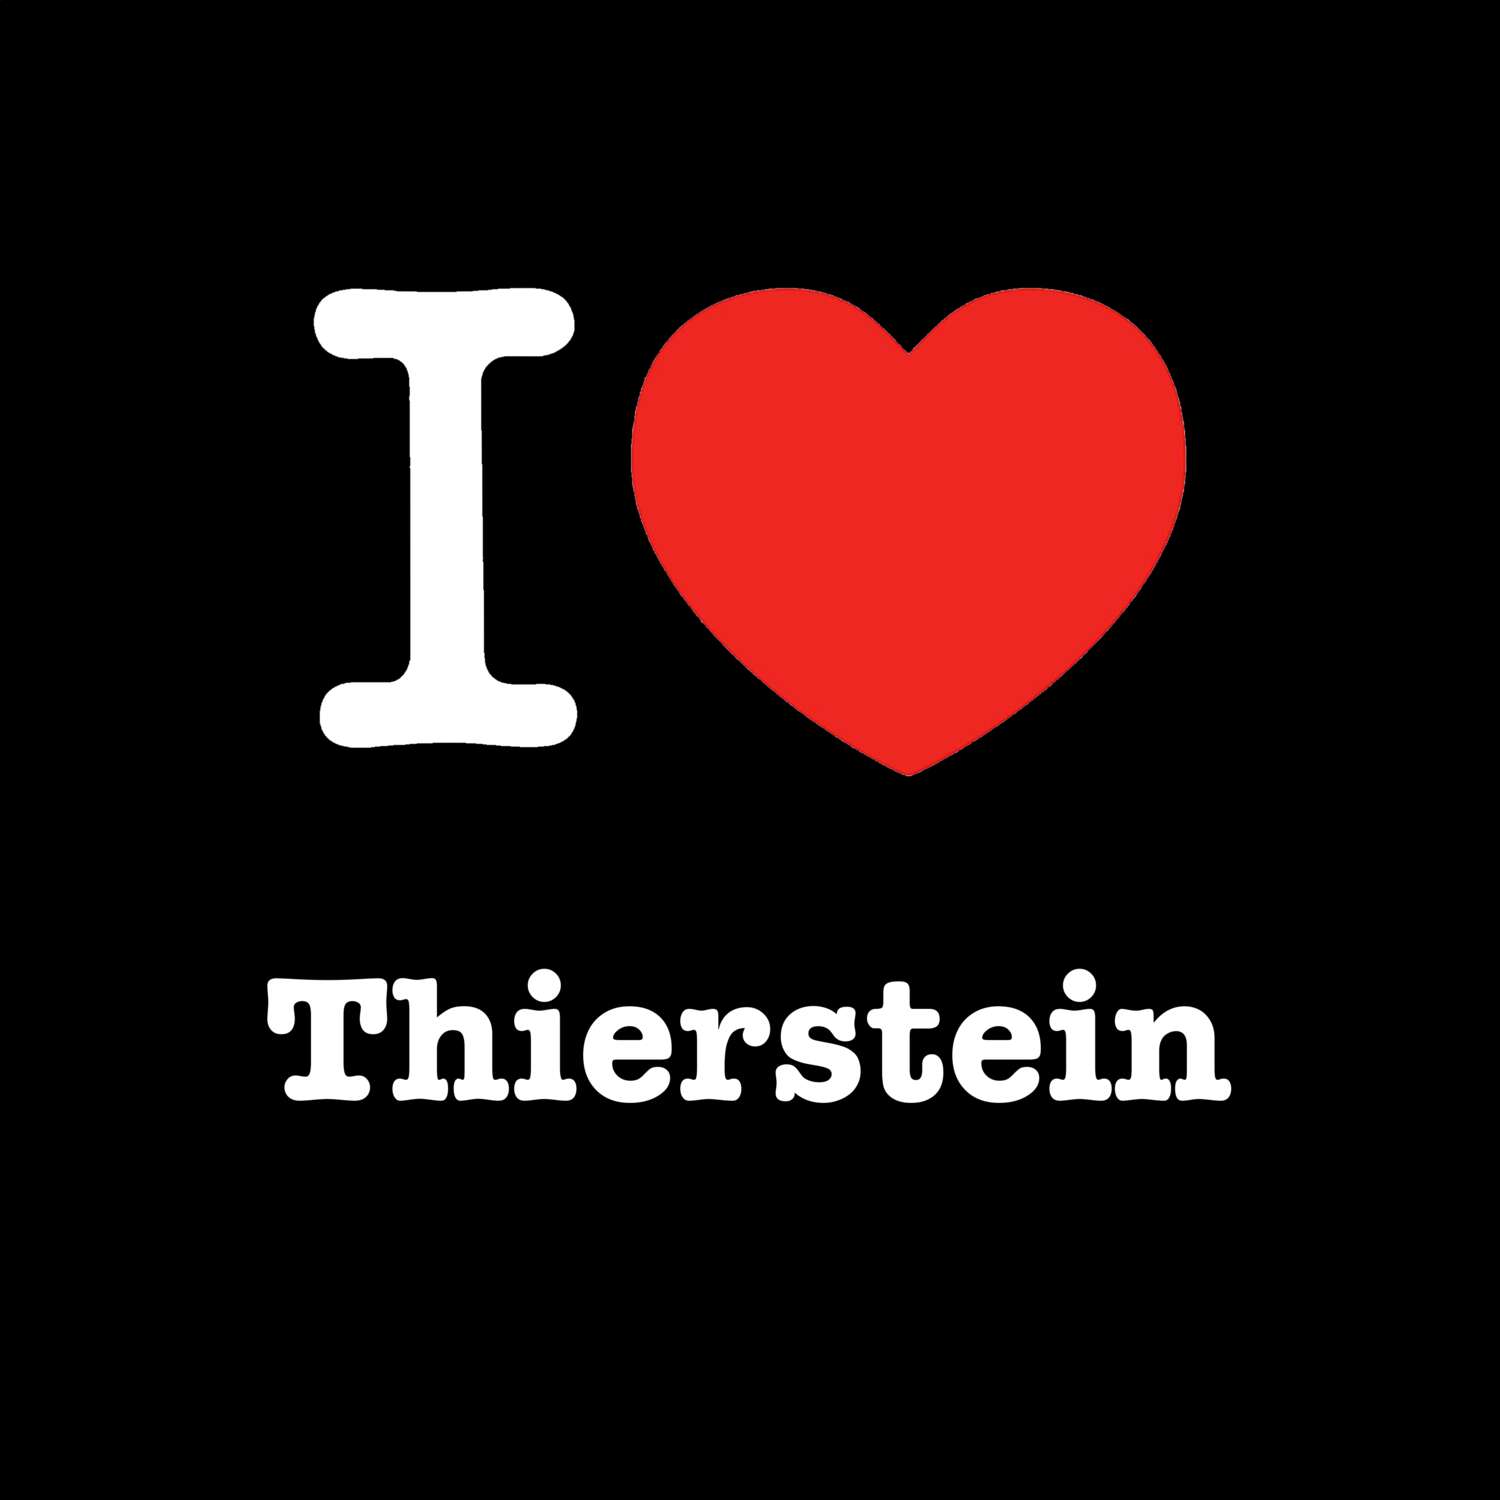 Thierstein T-Shirt »I love«